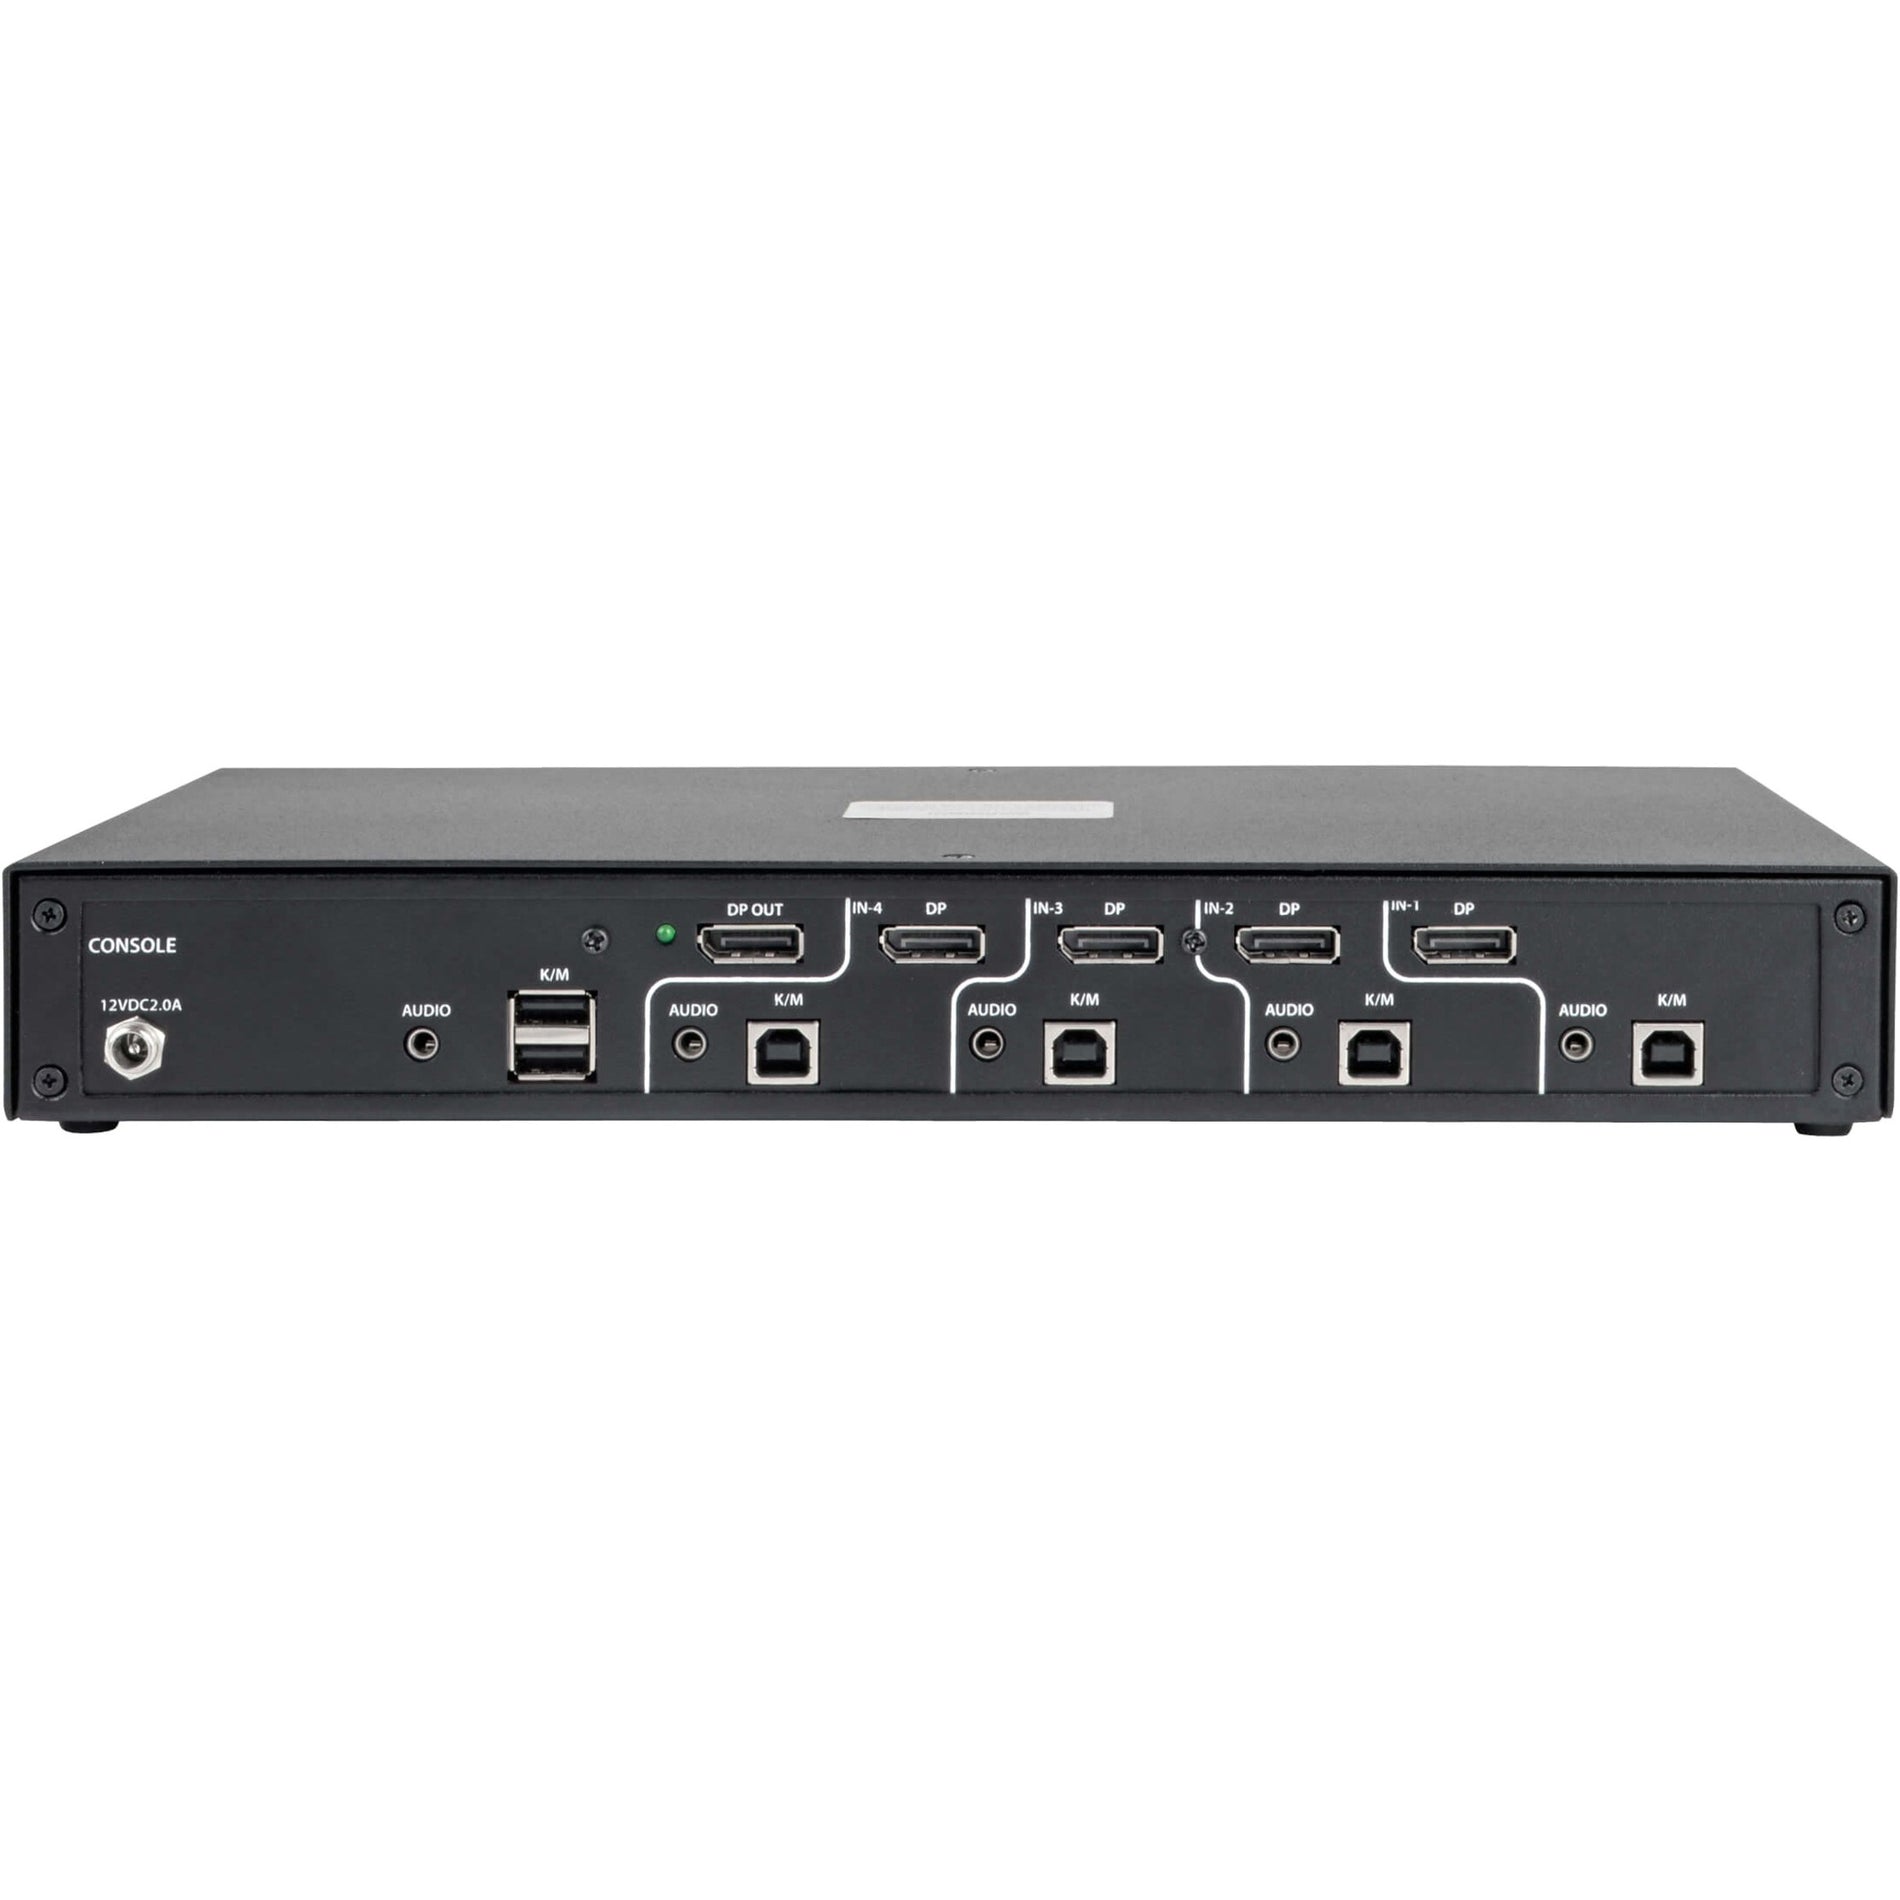 Tripp Lite B002-DP1A4 Switch KVM DisplayPort Seguro de 4 Puertos Certificado NIAP PP3.0 Resolución 3840 x 2160 Garantía de 3 Años